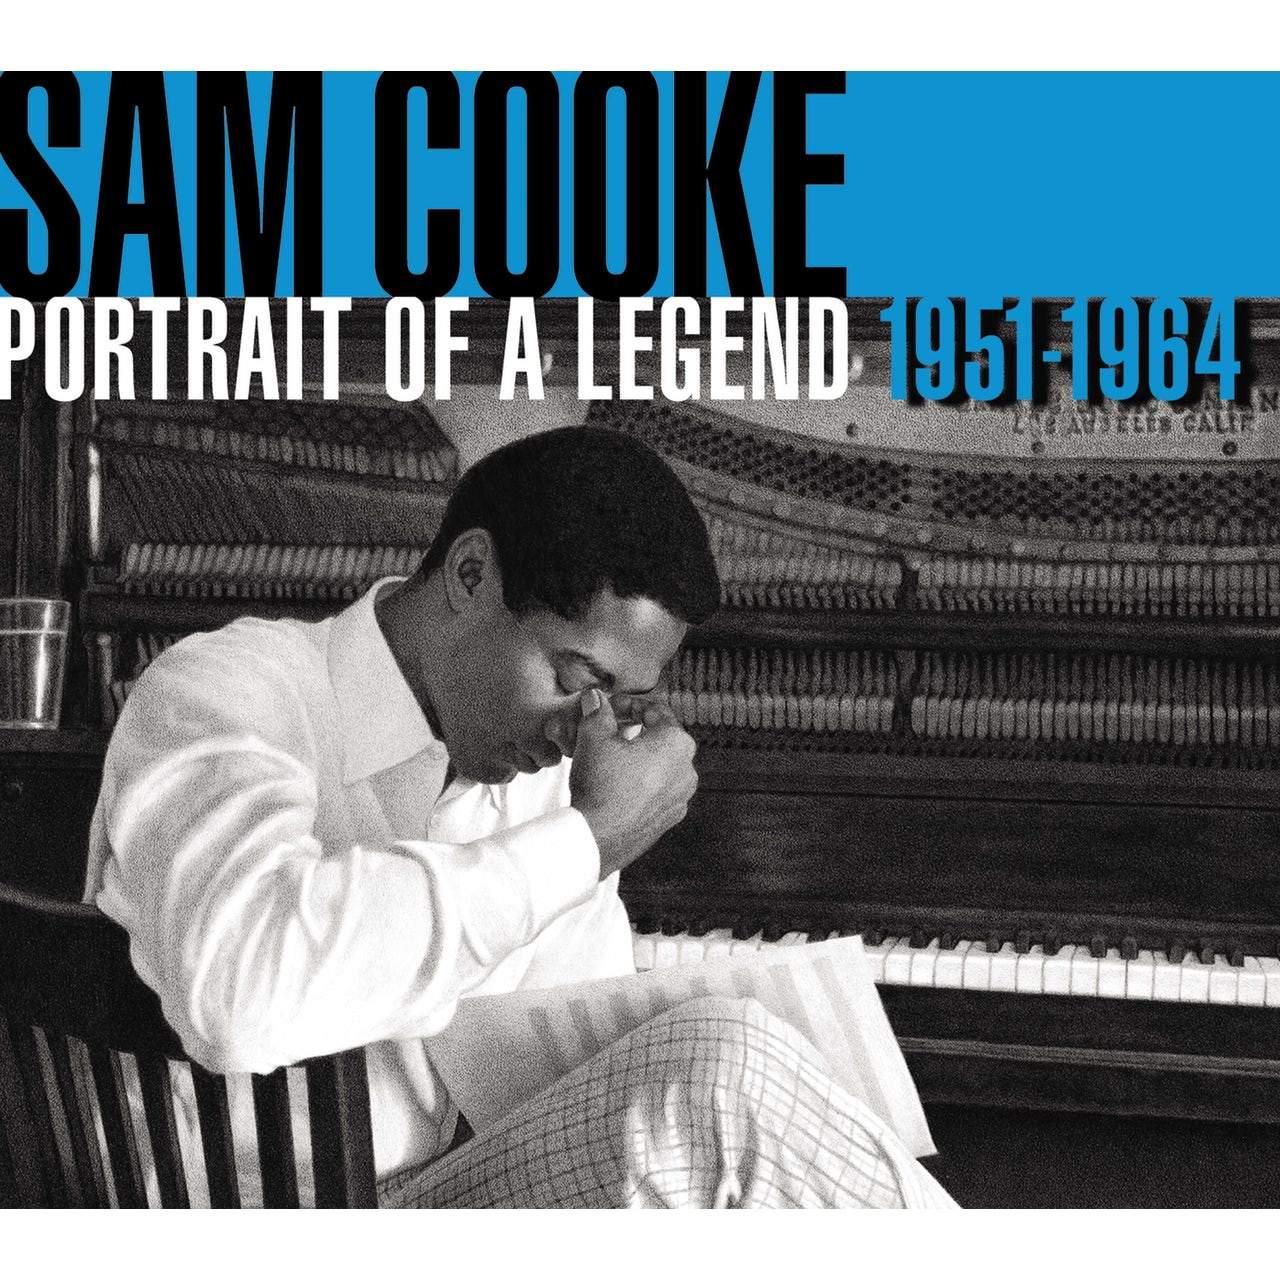 Sam Cooke - Portrait Of A Legend, 1951-1964 (Limited Edition, 180 Gram) (2 LP) - Joco Records